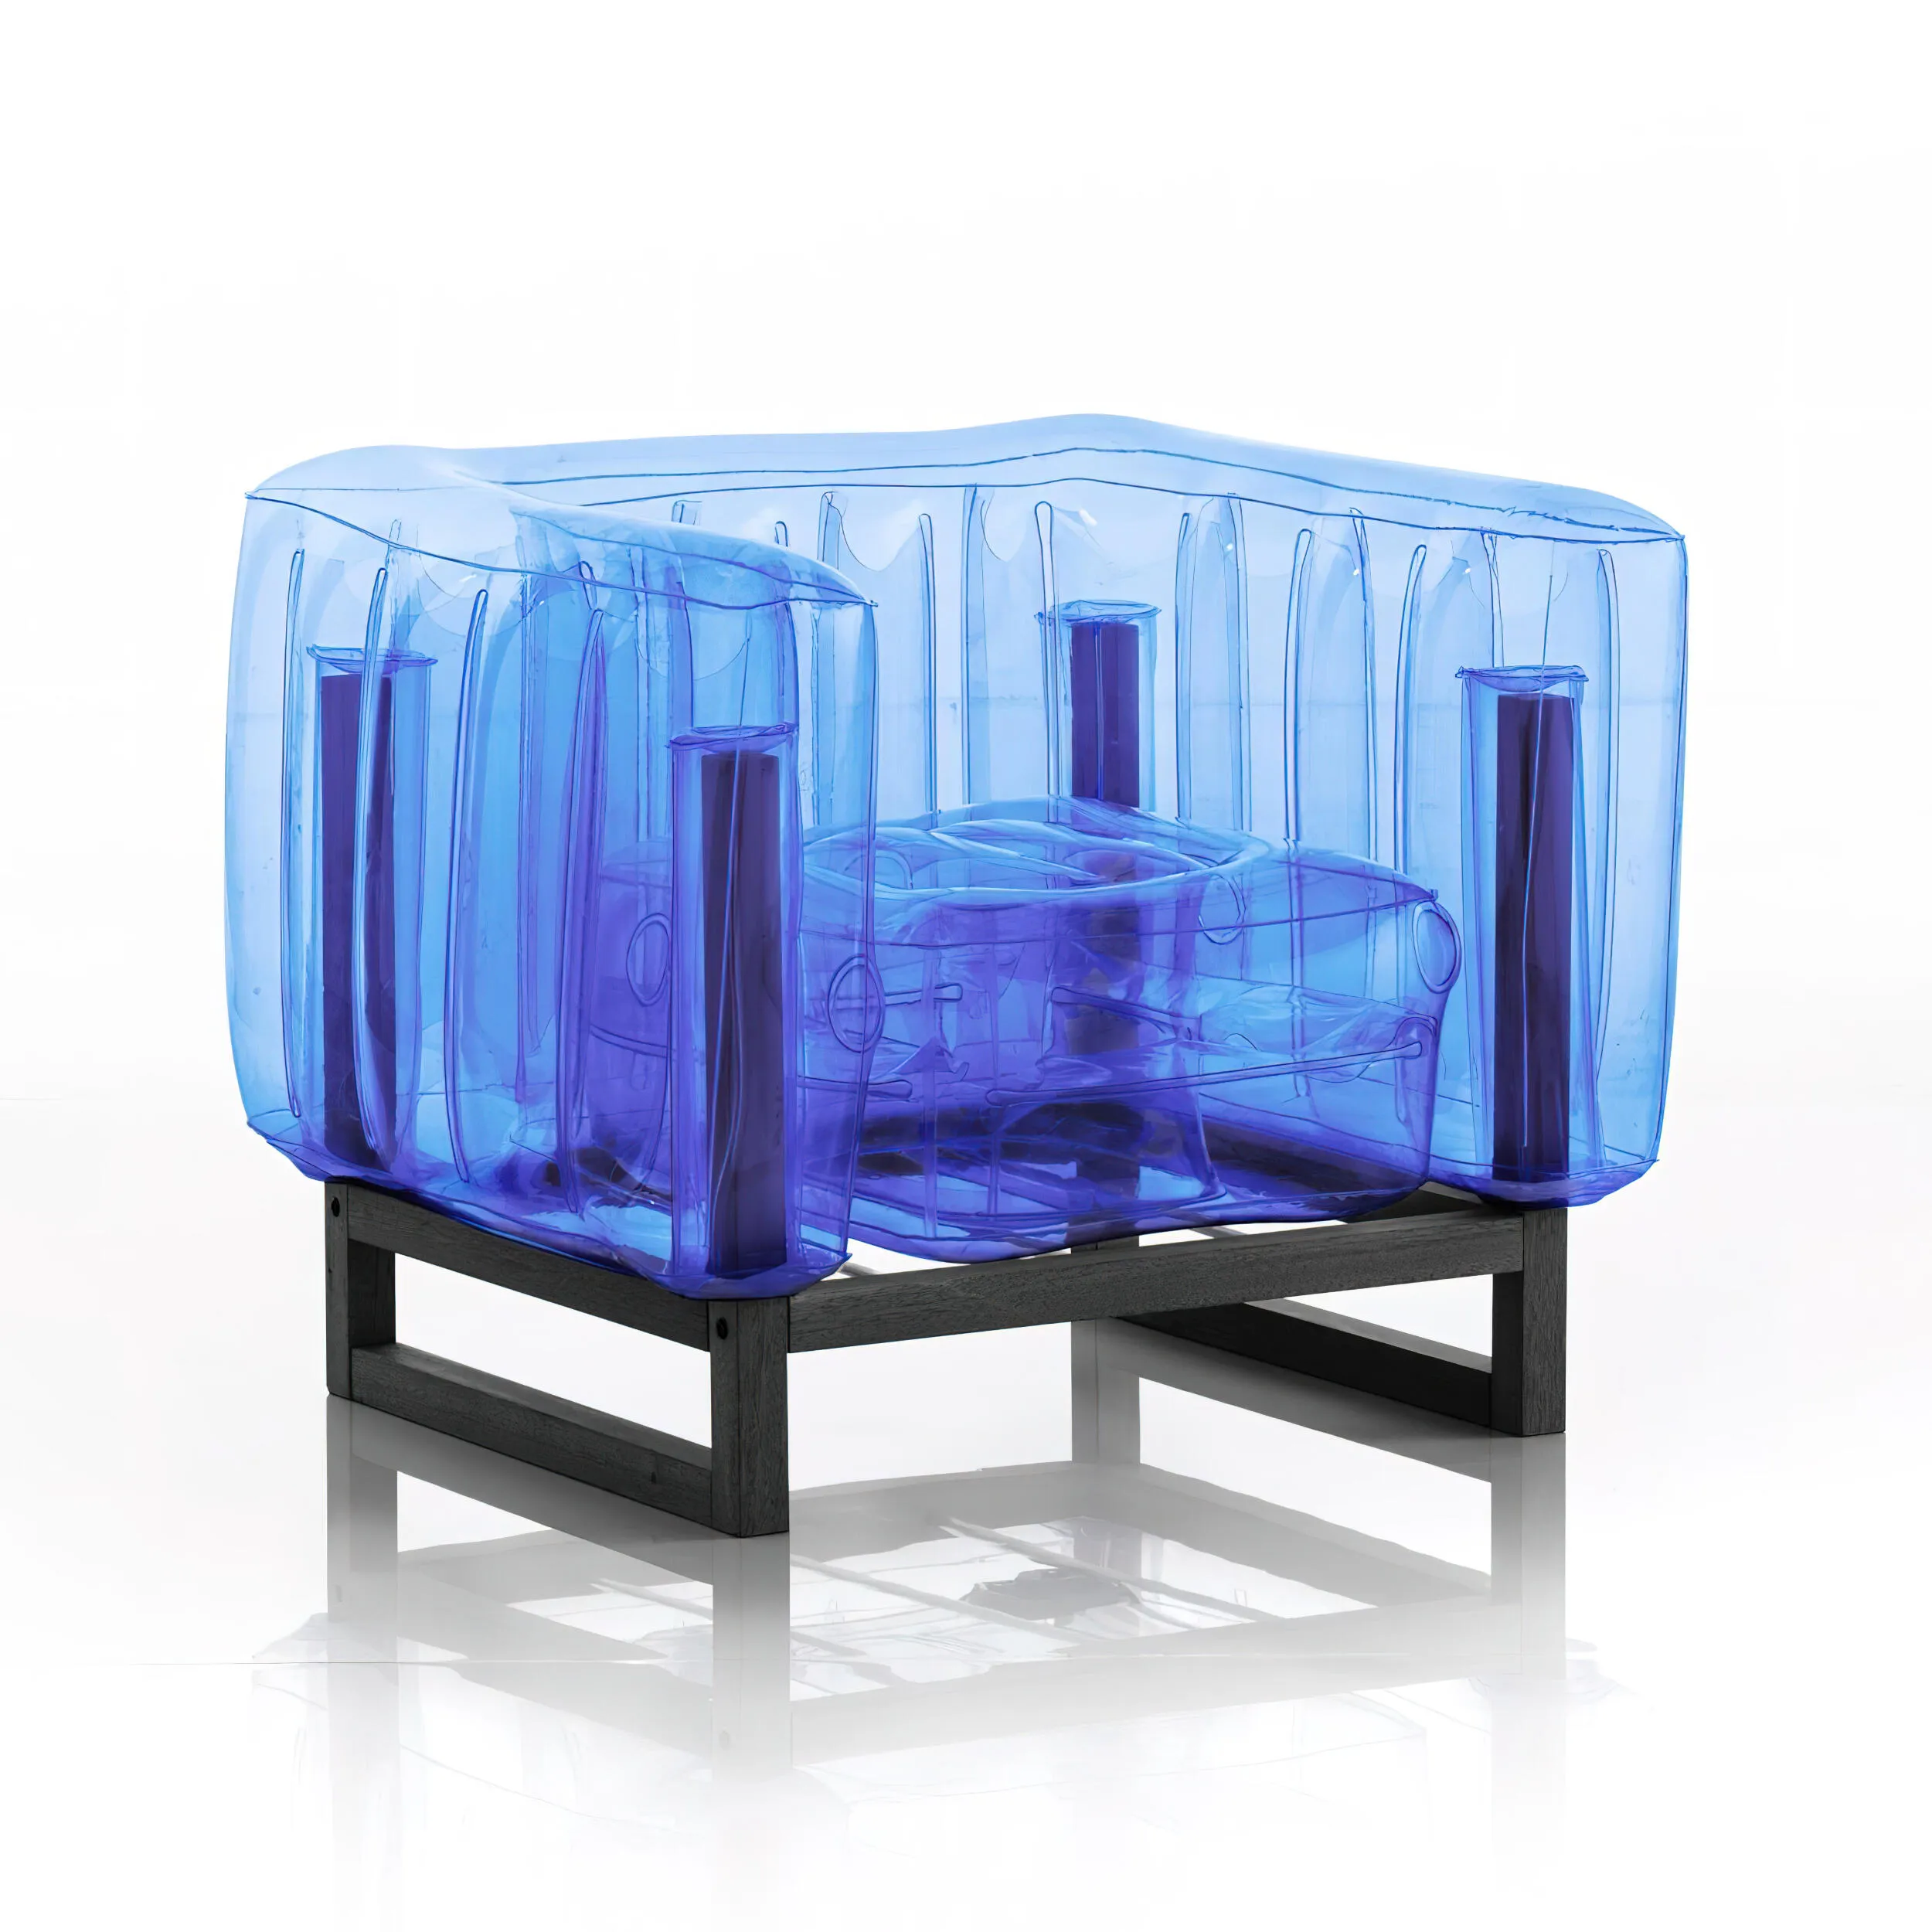 poltrona Yomi eko struttura in legno nero, dimensioni 76x83xH69 cm peso 12,7 kg, seduta gonfiabile in TPU colore blu